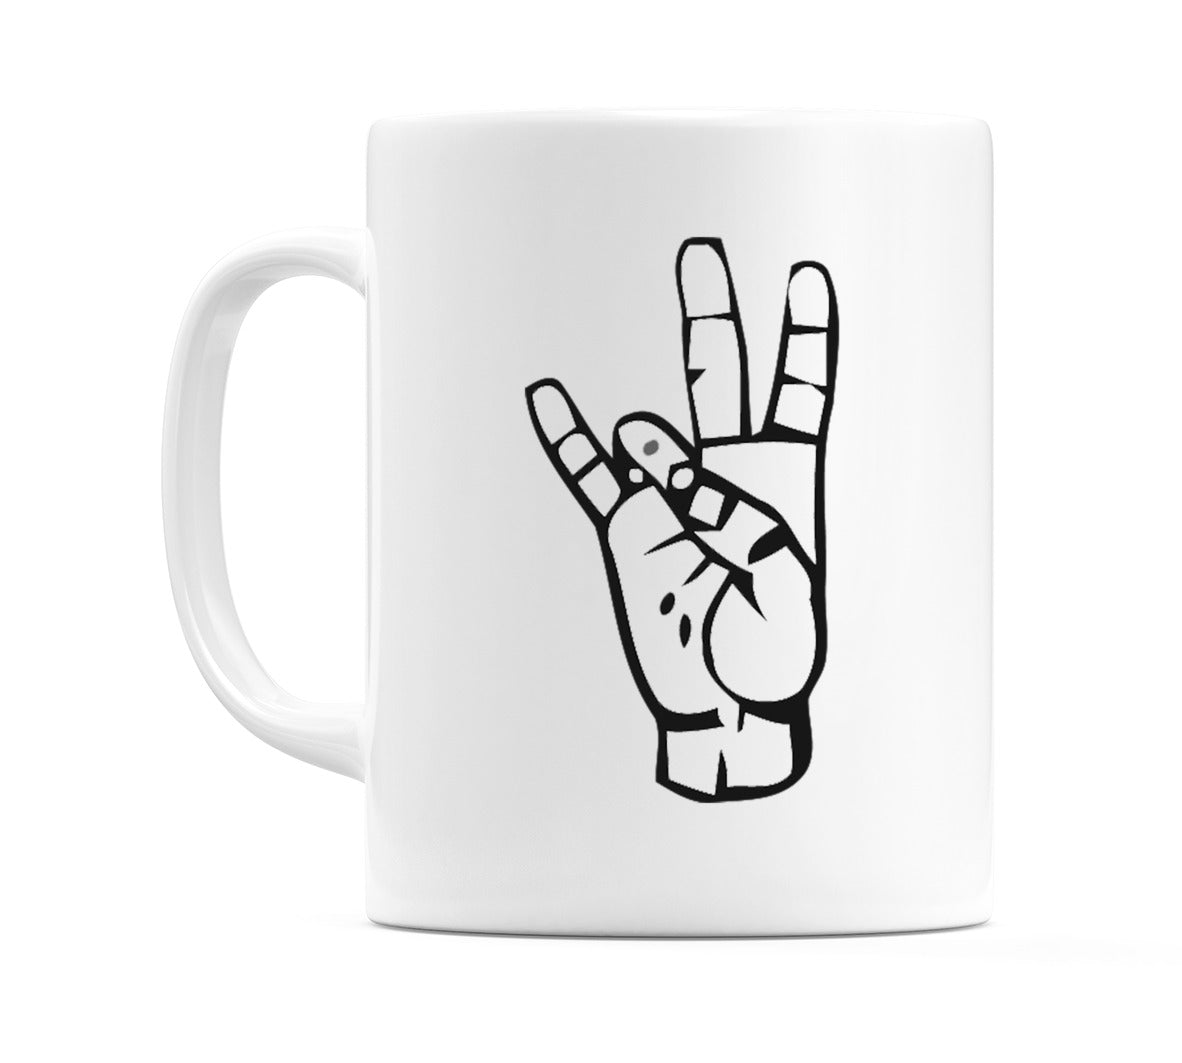 US Sign Language Number 7 Mug